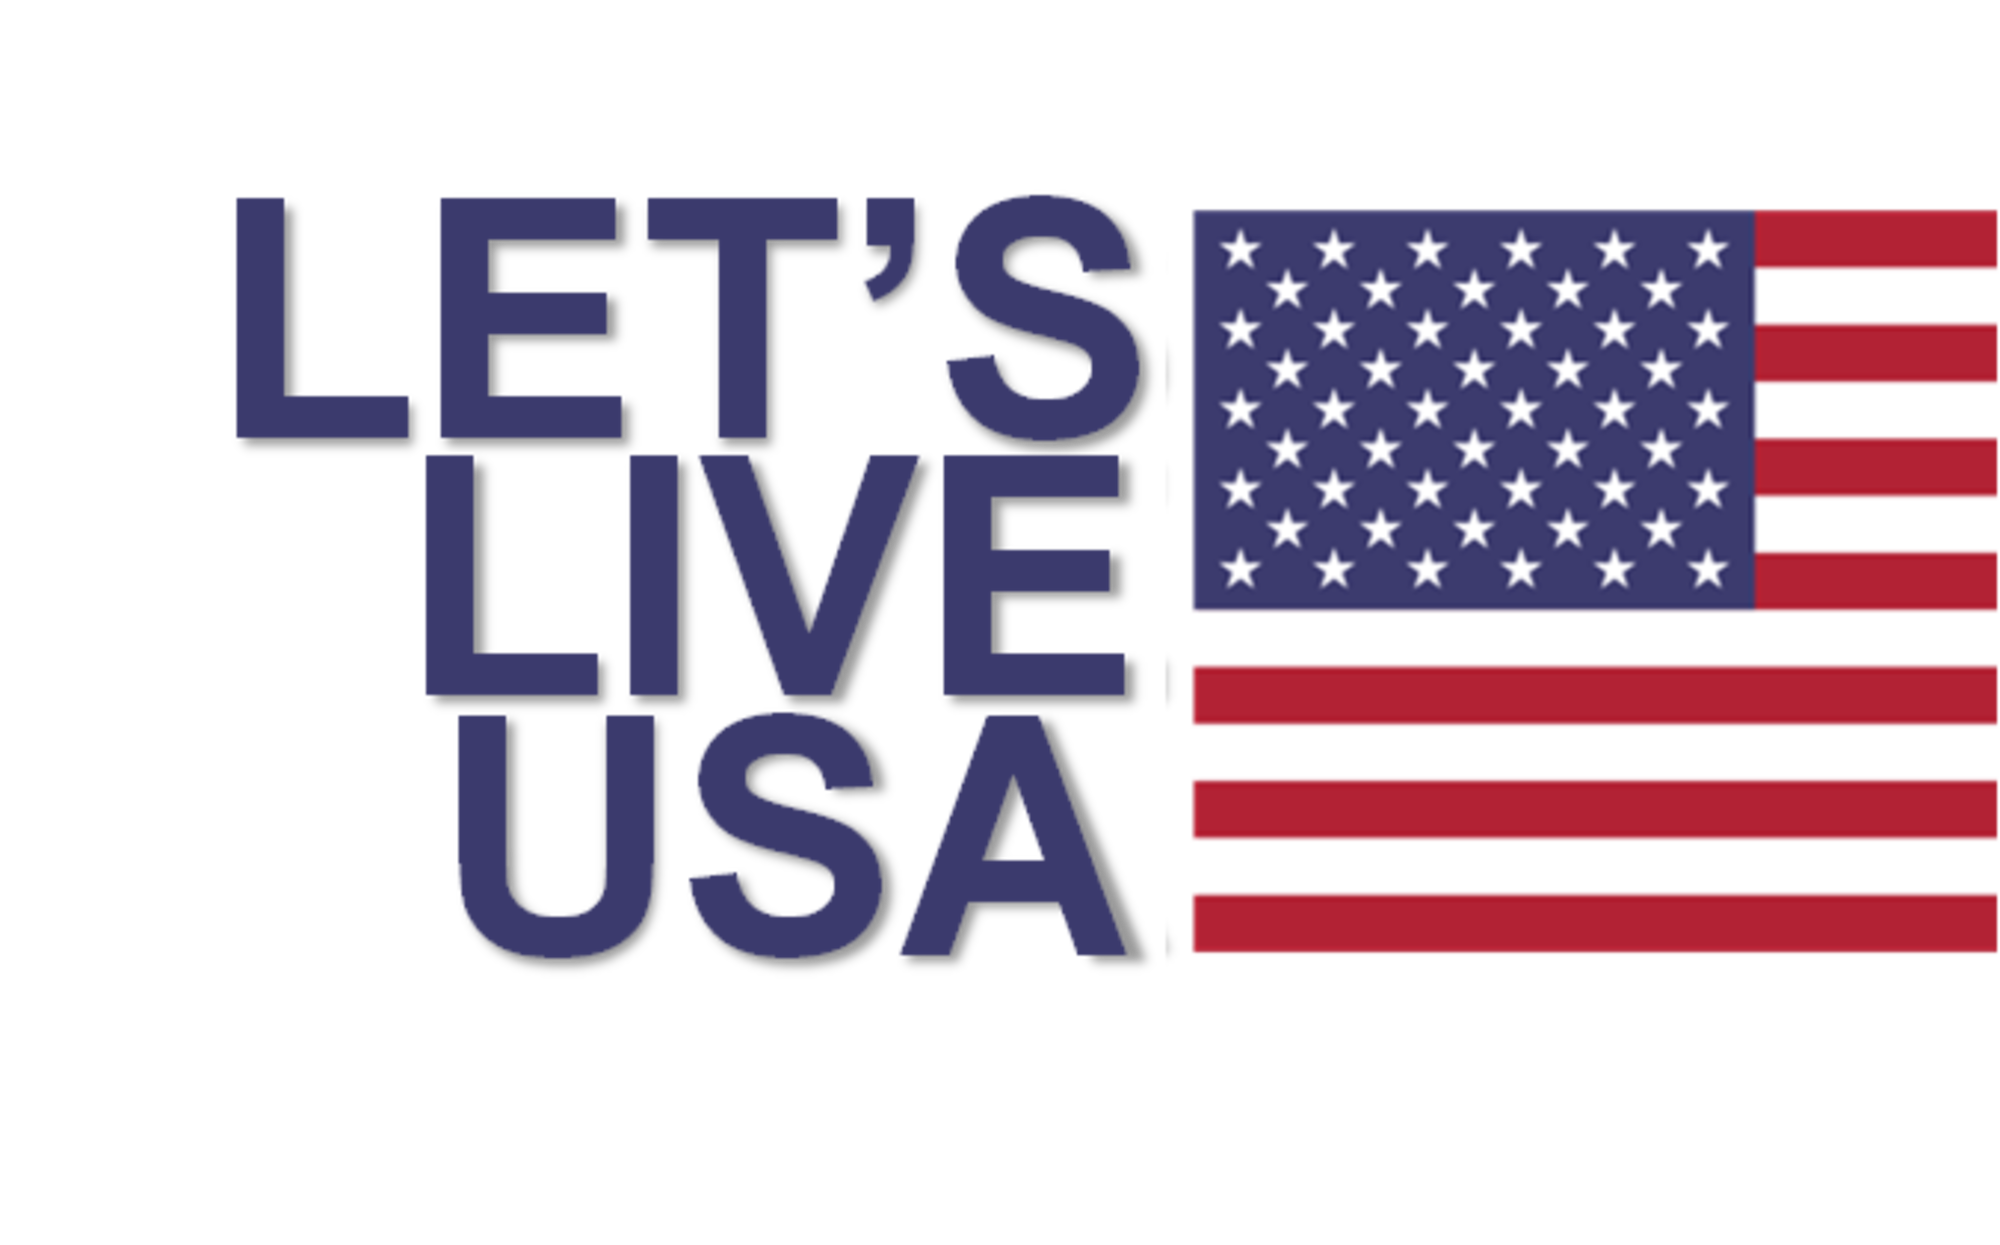 Let's Live USA - WYSTC